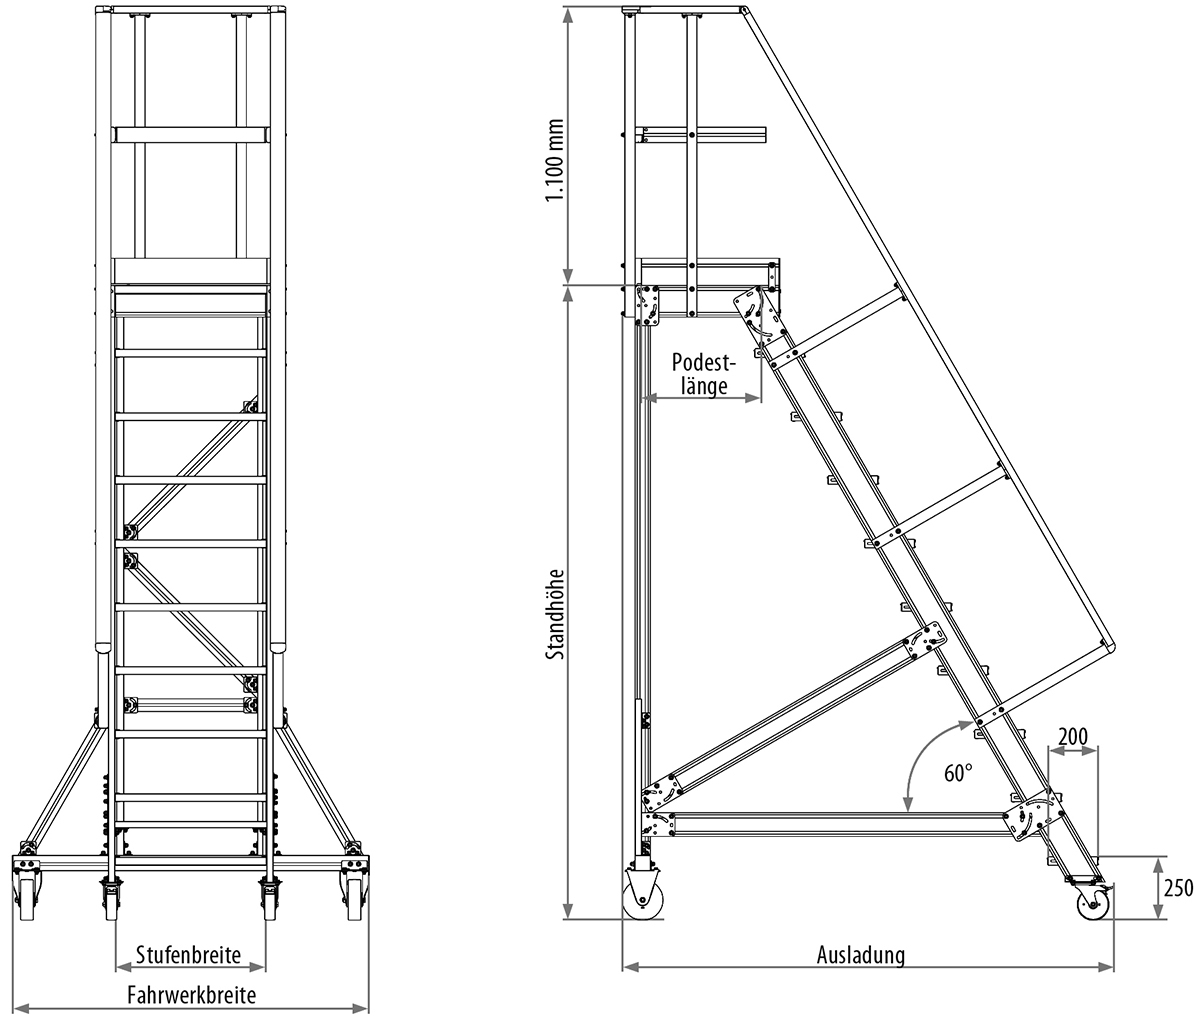 Podesttreppe fahrbar, Treppenneigung 60°, Stufenbreite 600 mm - 5 Stufen